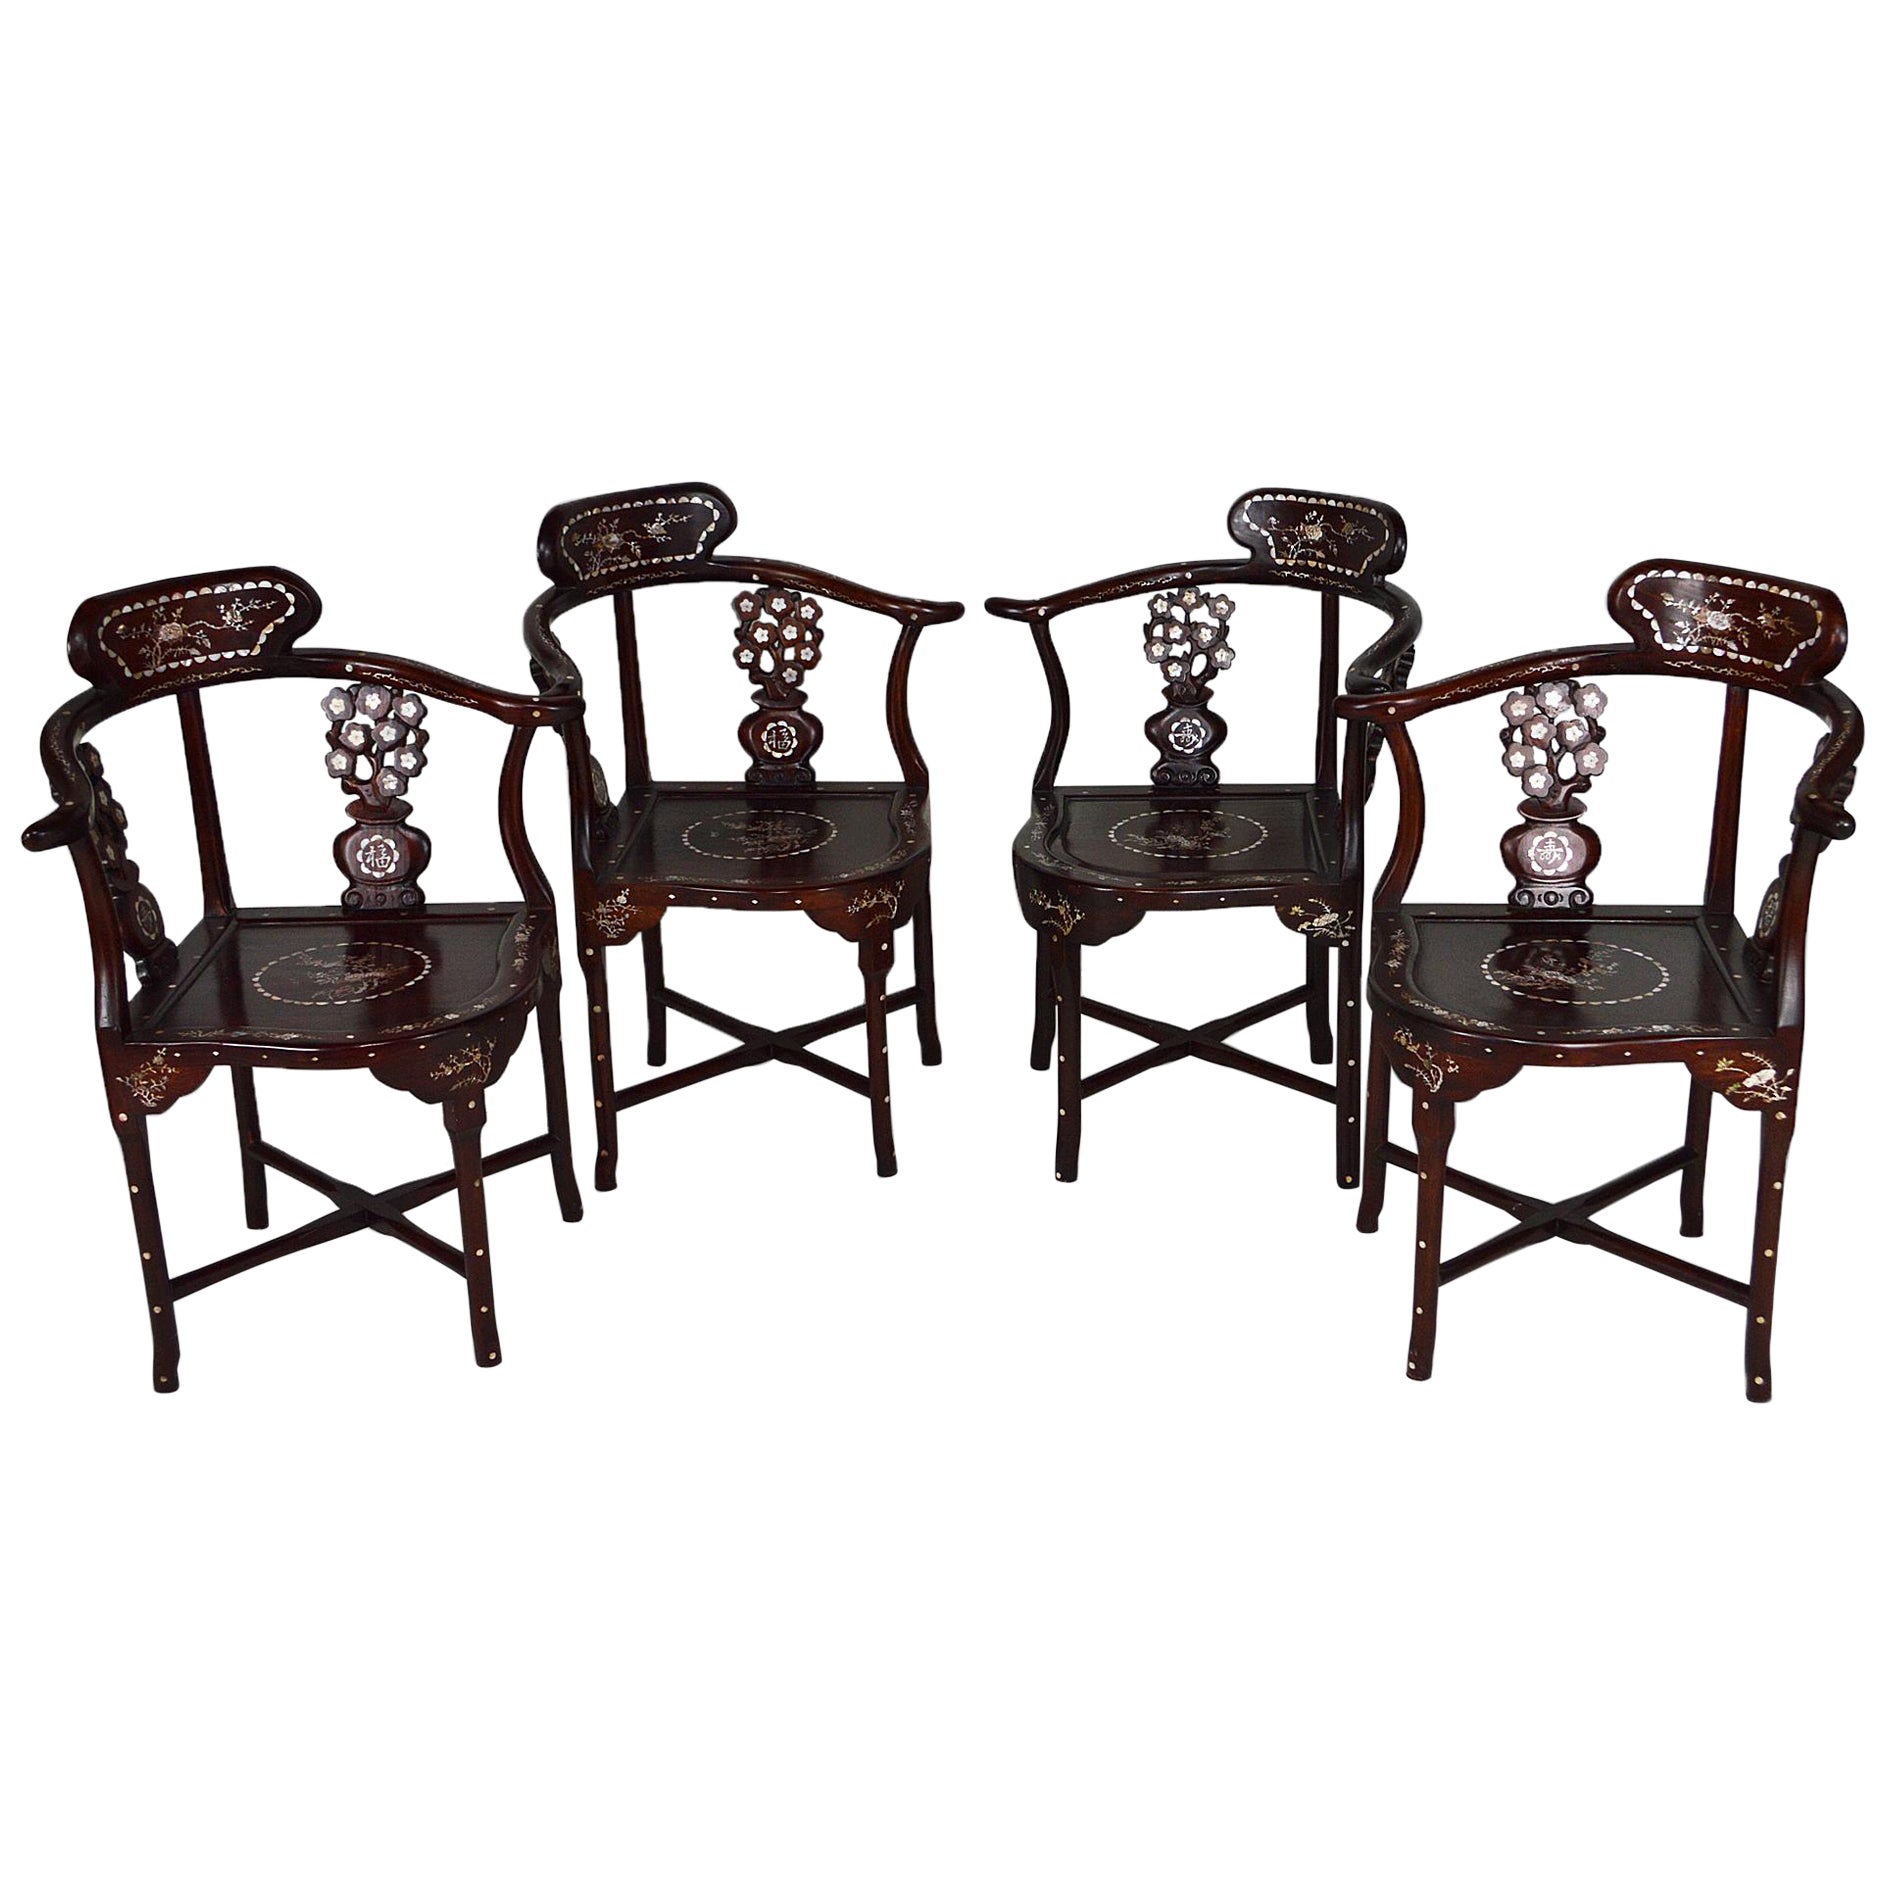 Set aus 4 asiatischen Sesseln aus geschnitztem und eingelegtem Holz, um 1900-1920